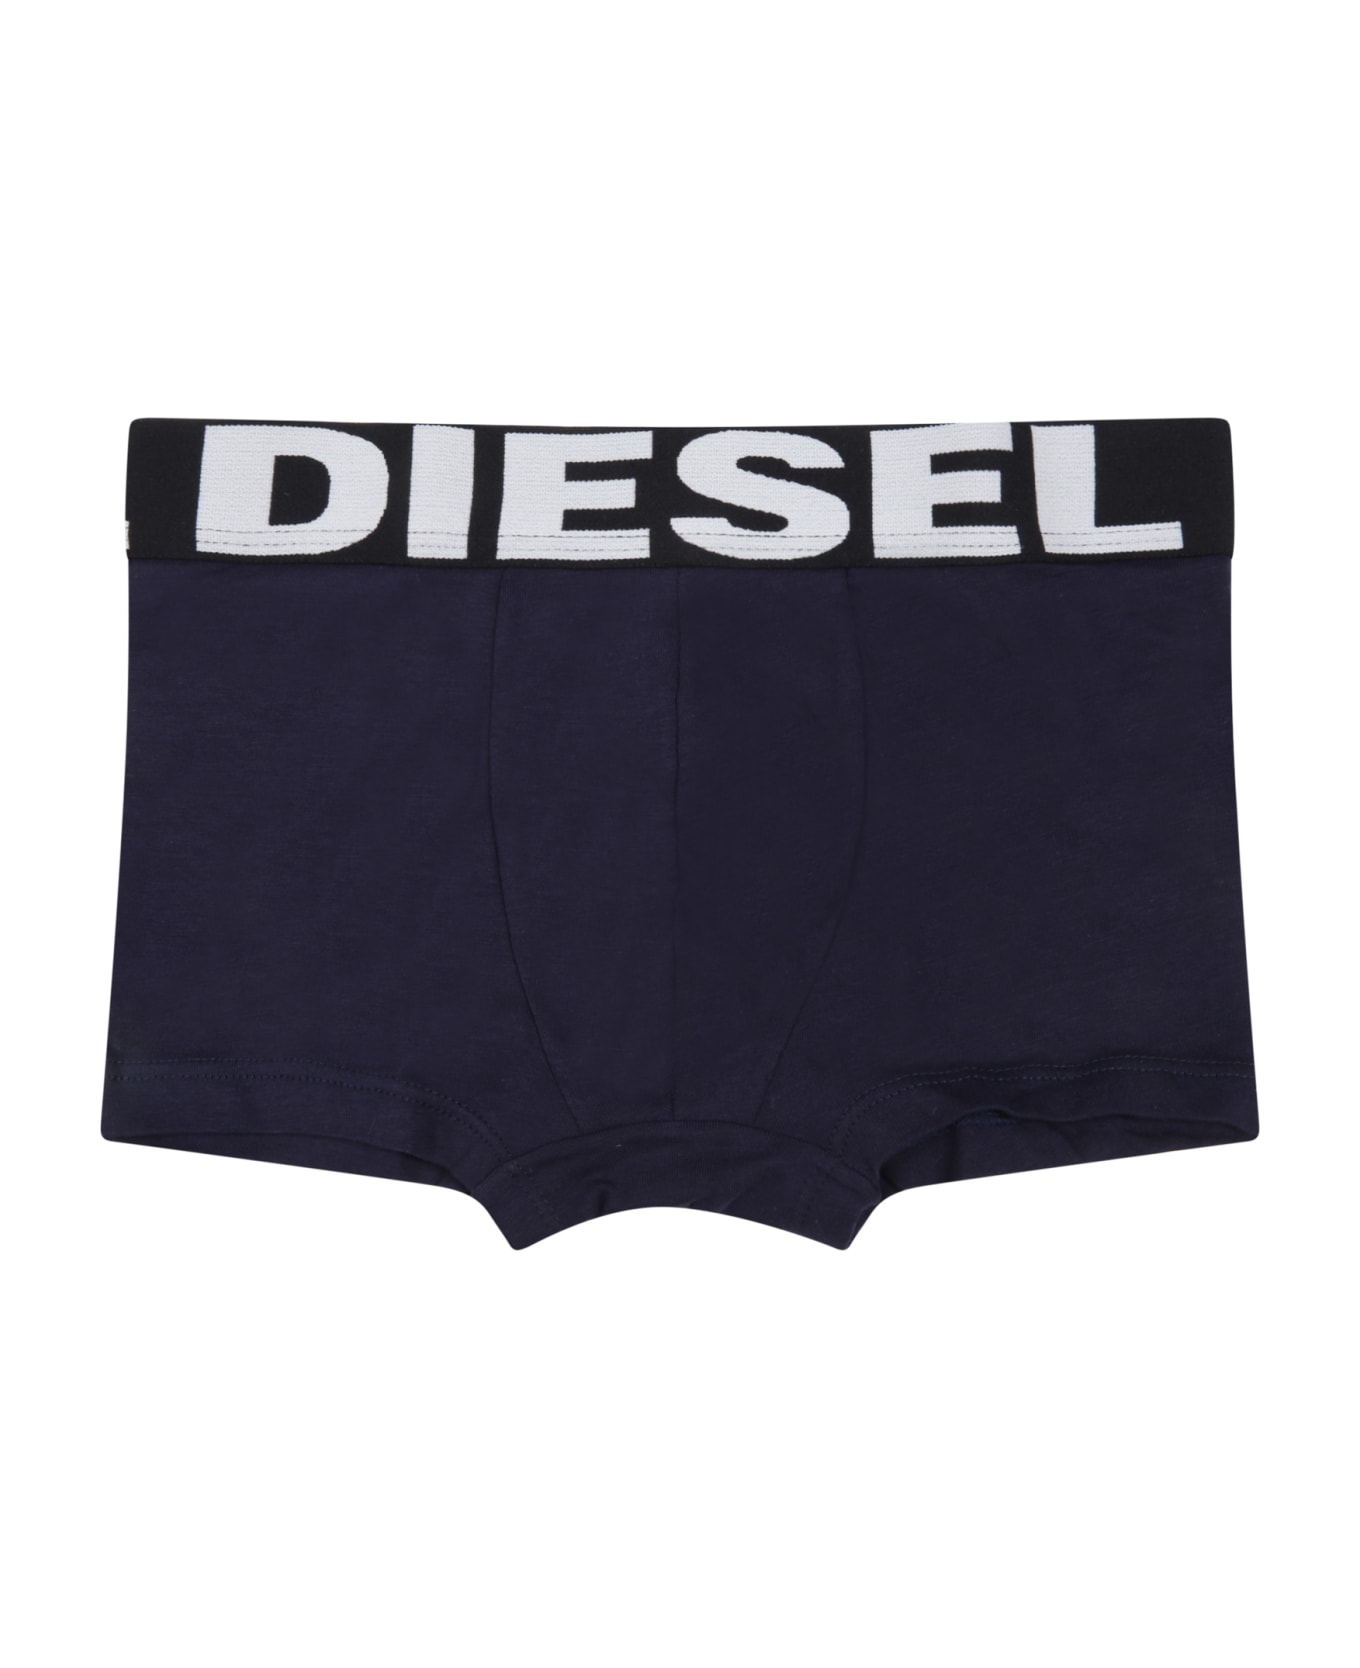 Diesel Multicolor Set For Boy With Logo - Multicolor アンダーウェア